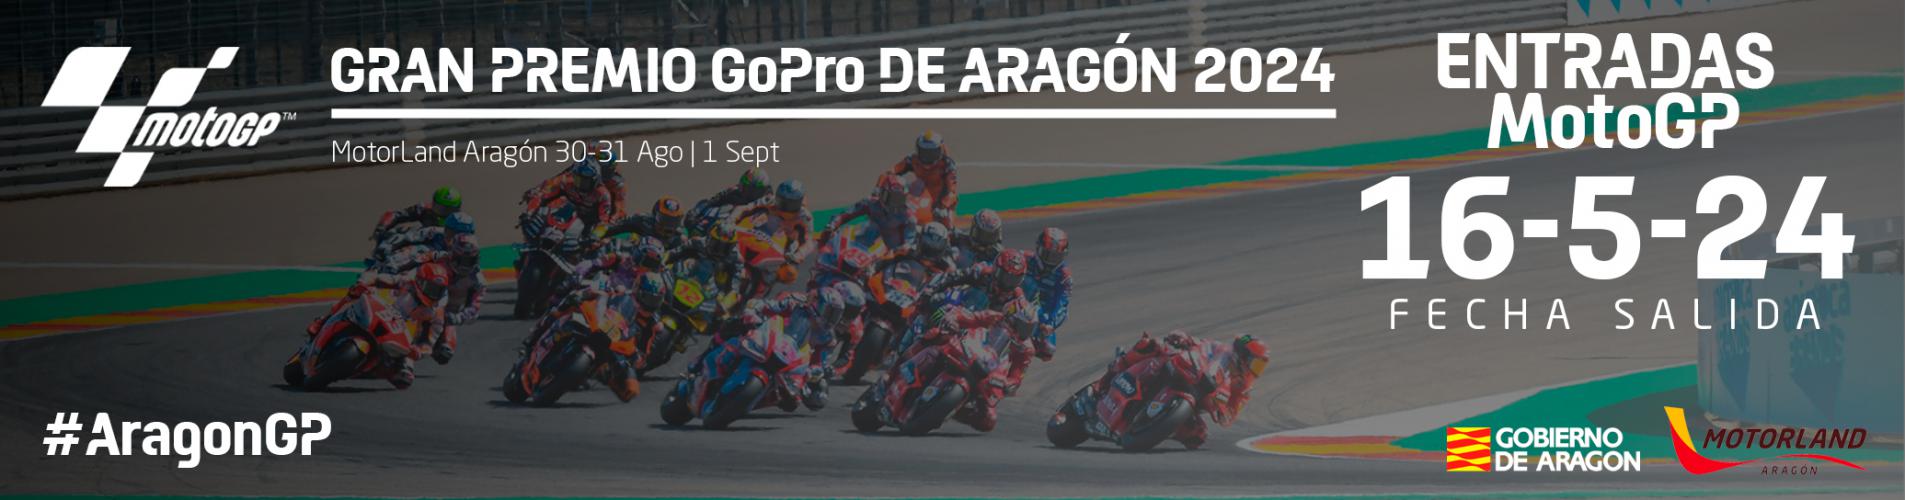 Venta premium de entradas para el Gran Premio GoPro de Aragón 2024